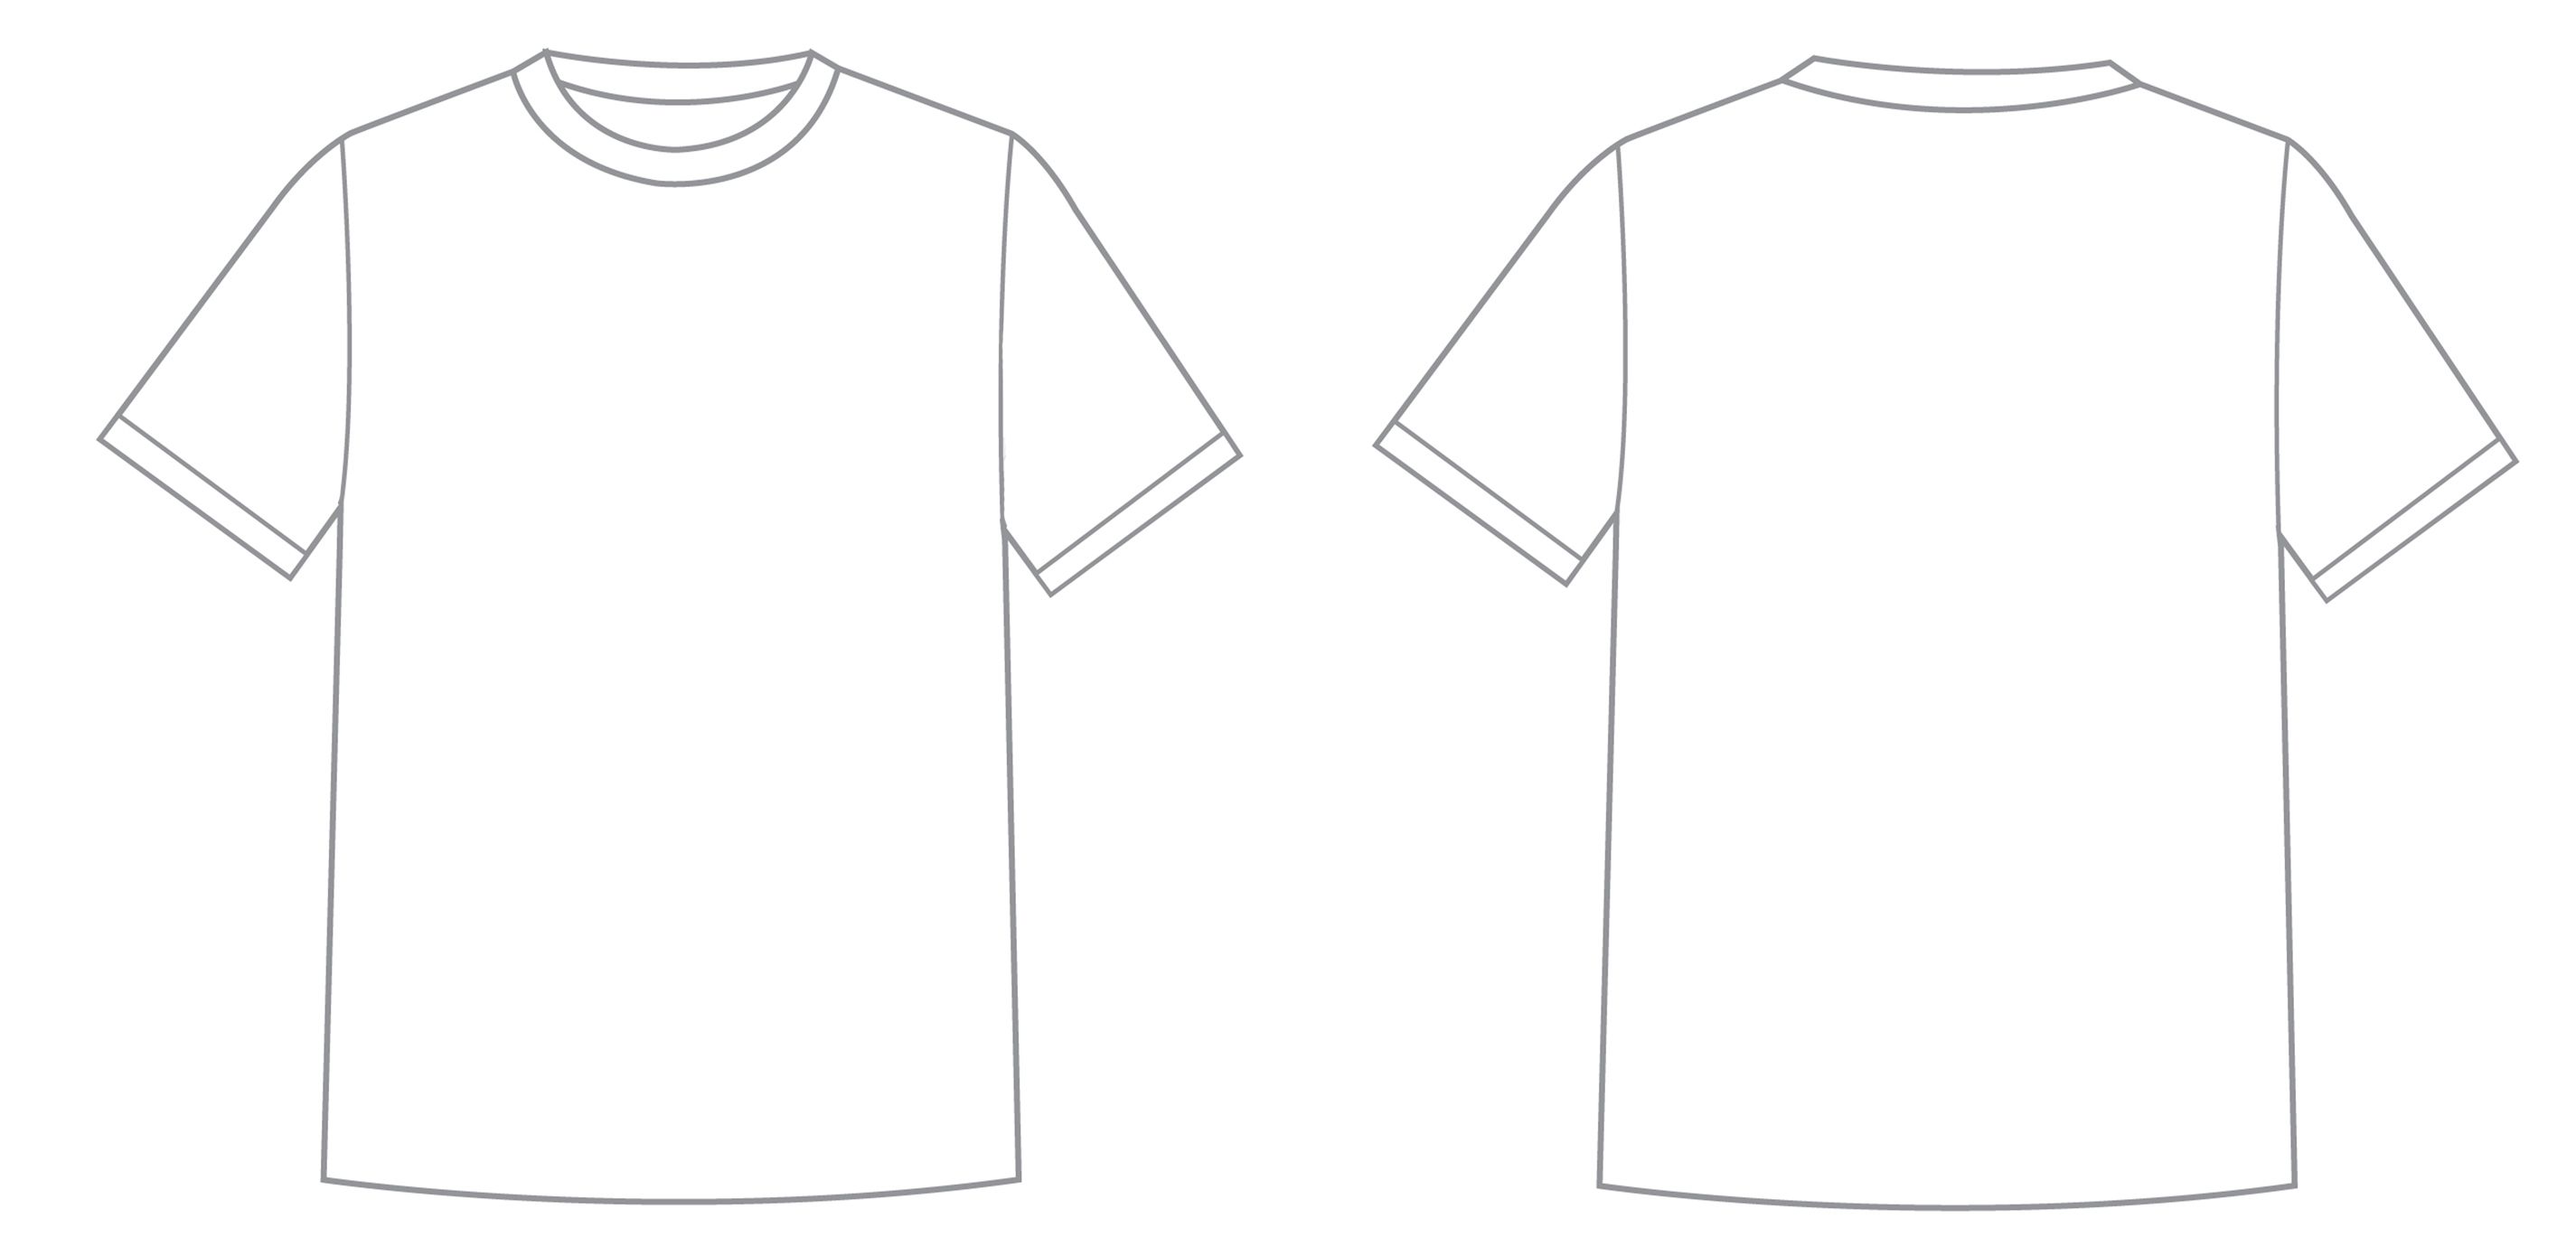 Artwork T Shirt Design Template - KibrisPDR